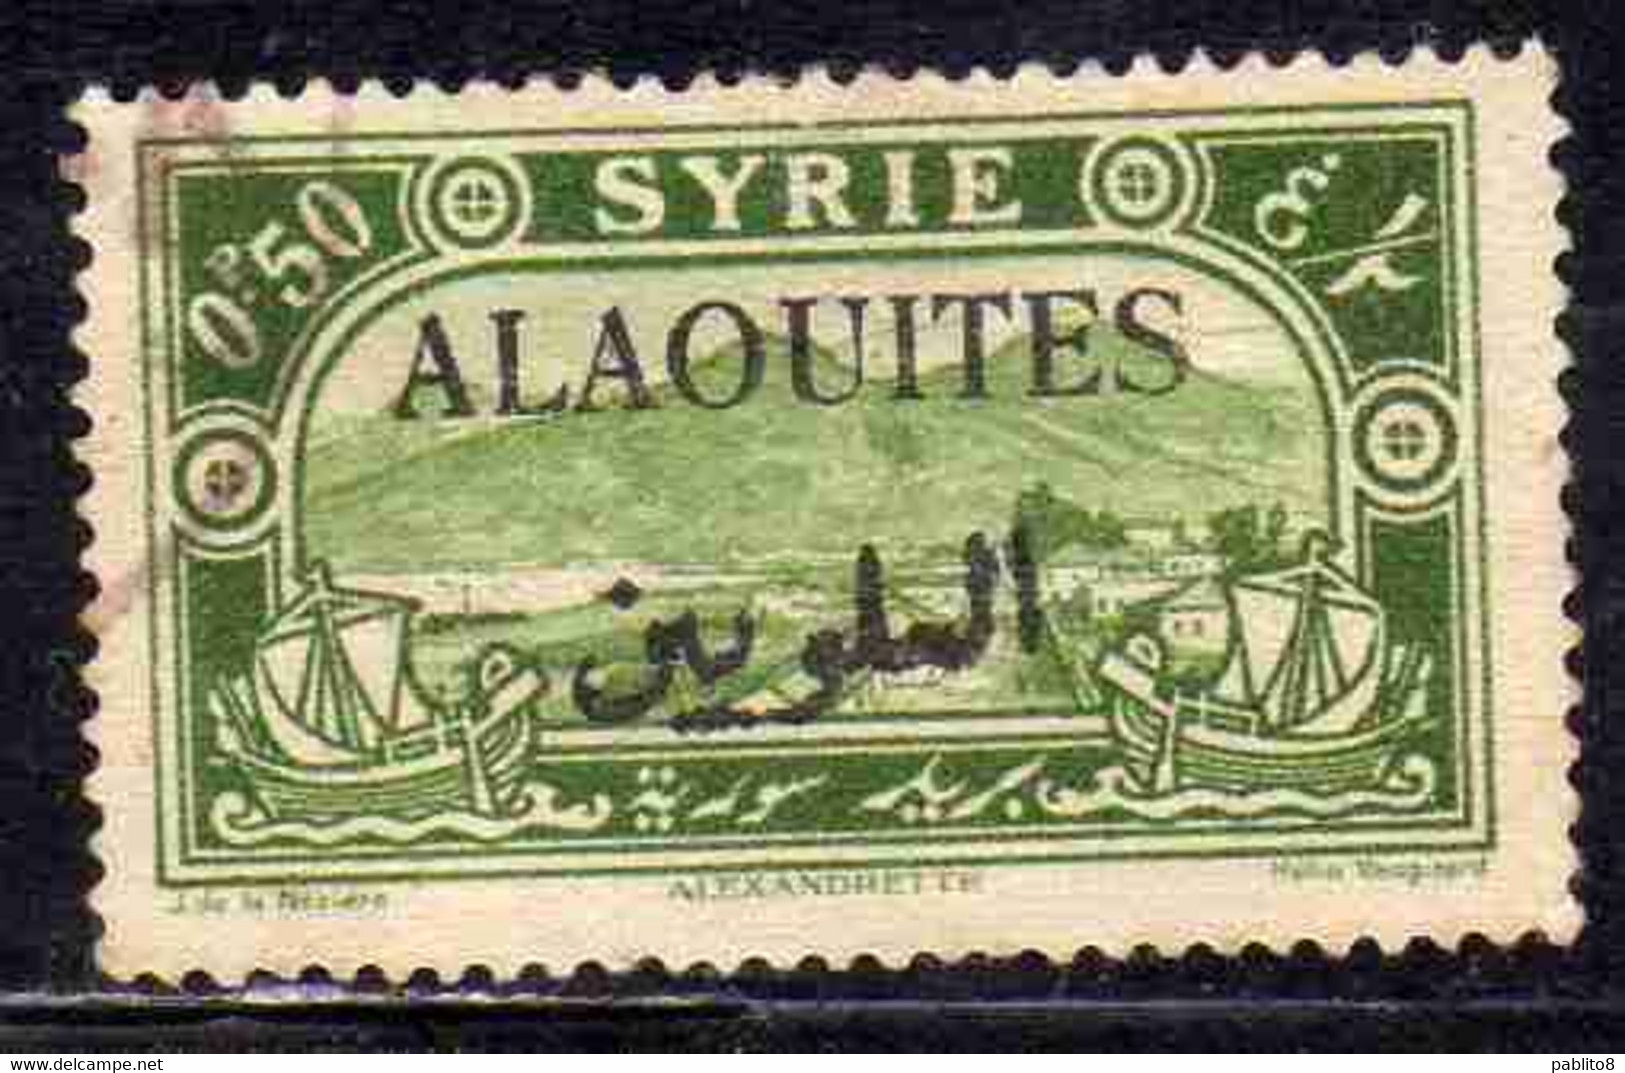 ALAOUITES SYRIA SIRIA ALAQUITES 1925 VIEW OF ALEXANDRETTA 50c USED USATO OBLITERE' - Gebruikt